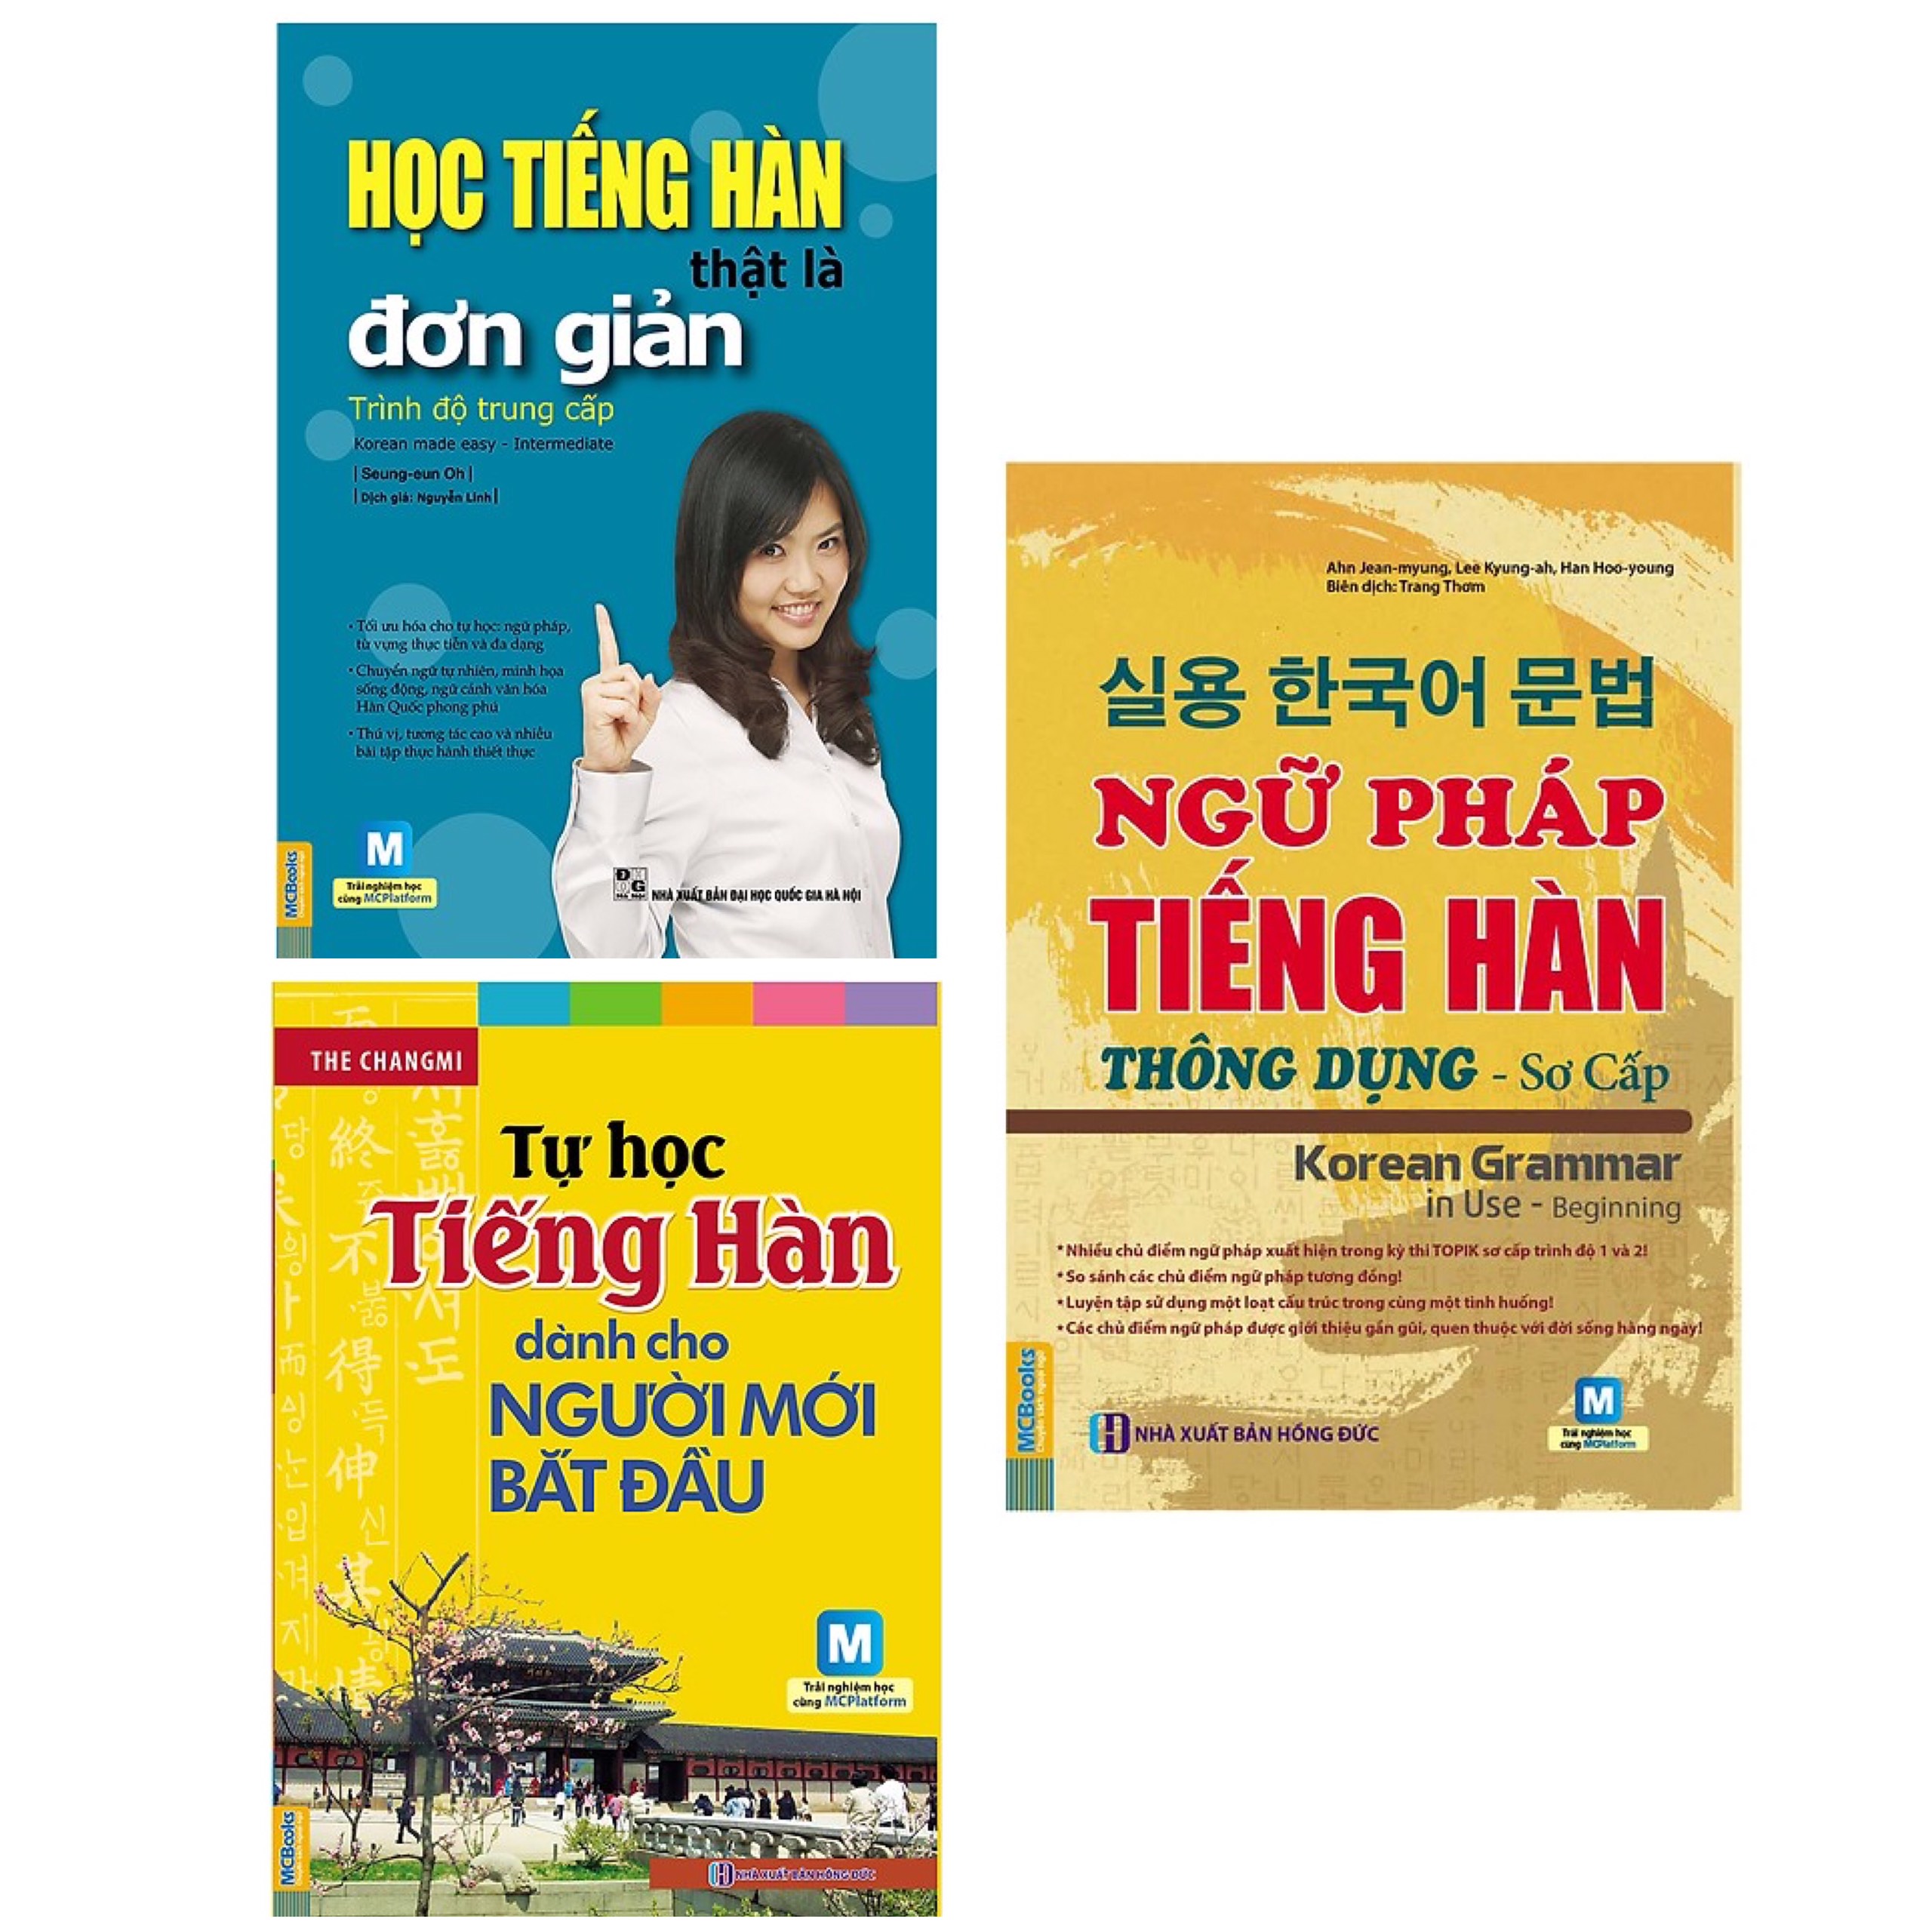 Combo 3 Cuốn Sách Tự Học Tiếng Hàn : Học Tiếng Hàn Thật Là Đơn Giản - Trình Độ Trung Cấp + Tự Học Tiếng Hàn Dành Cho Người Mới Bắt Đầu (Kèm CD Hoặc Tải App) - Tái Bản + Ngữ Pháp Tiếng Hàn Thông Dụng - Sơ Cấp (Dùng APP MCBooks) (Tặng kèm Bookmark thiết kế AHA)